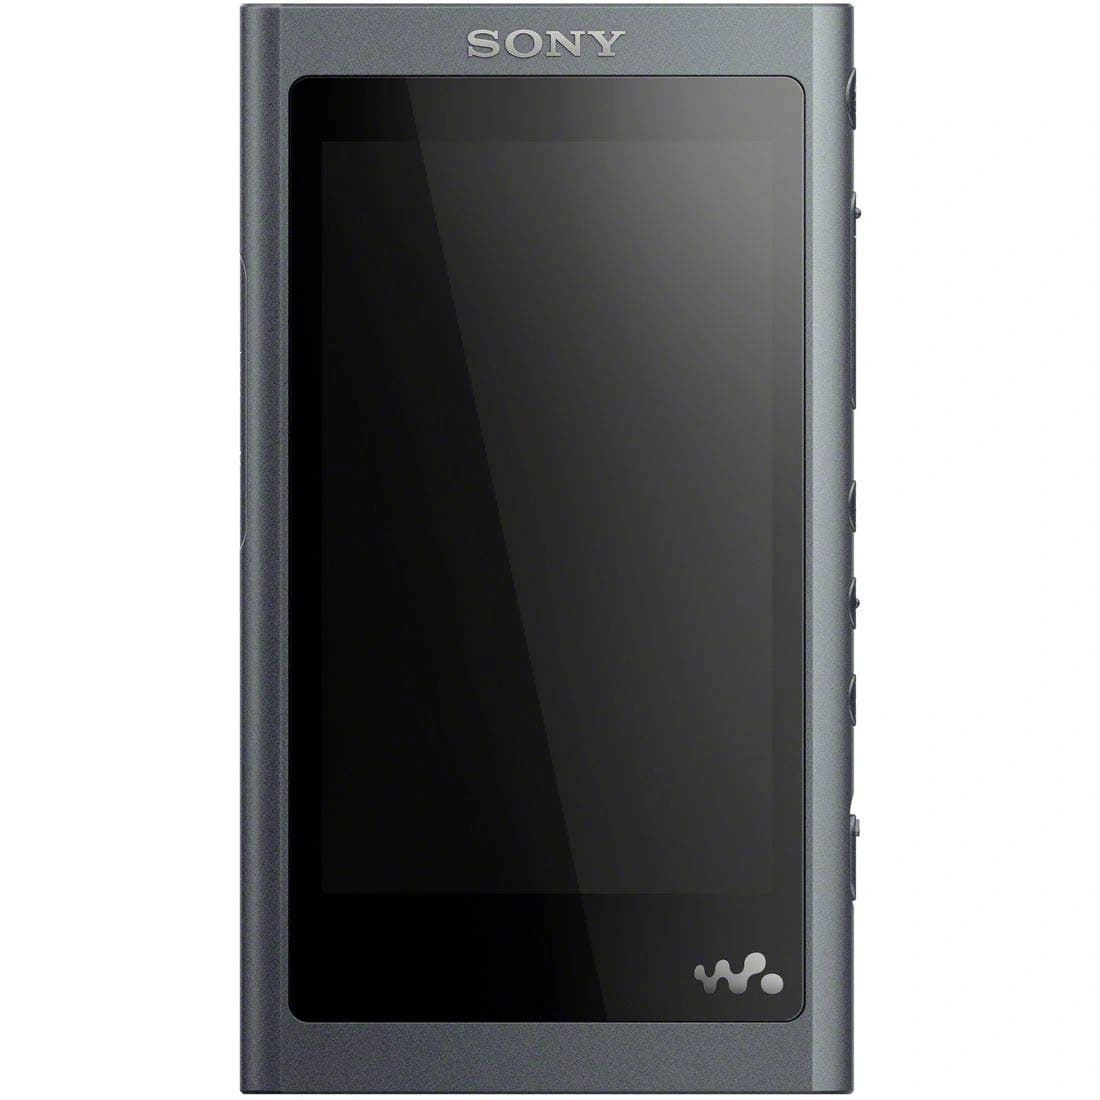 Фото — MP-3 плеер Sony Walkman NW-A55, черный